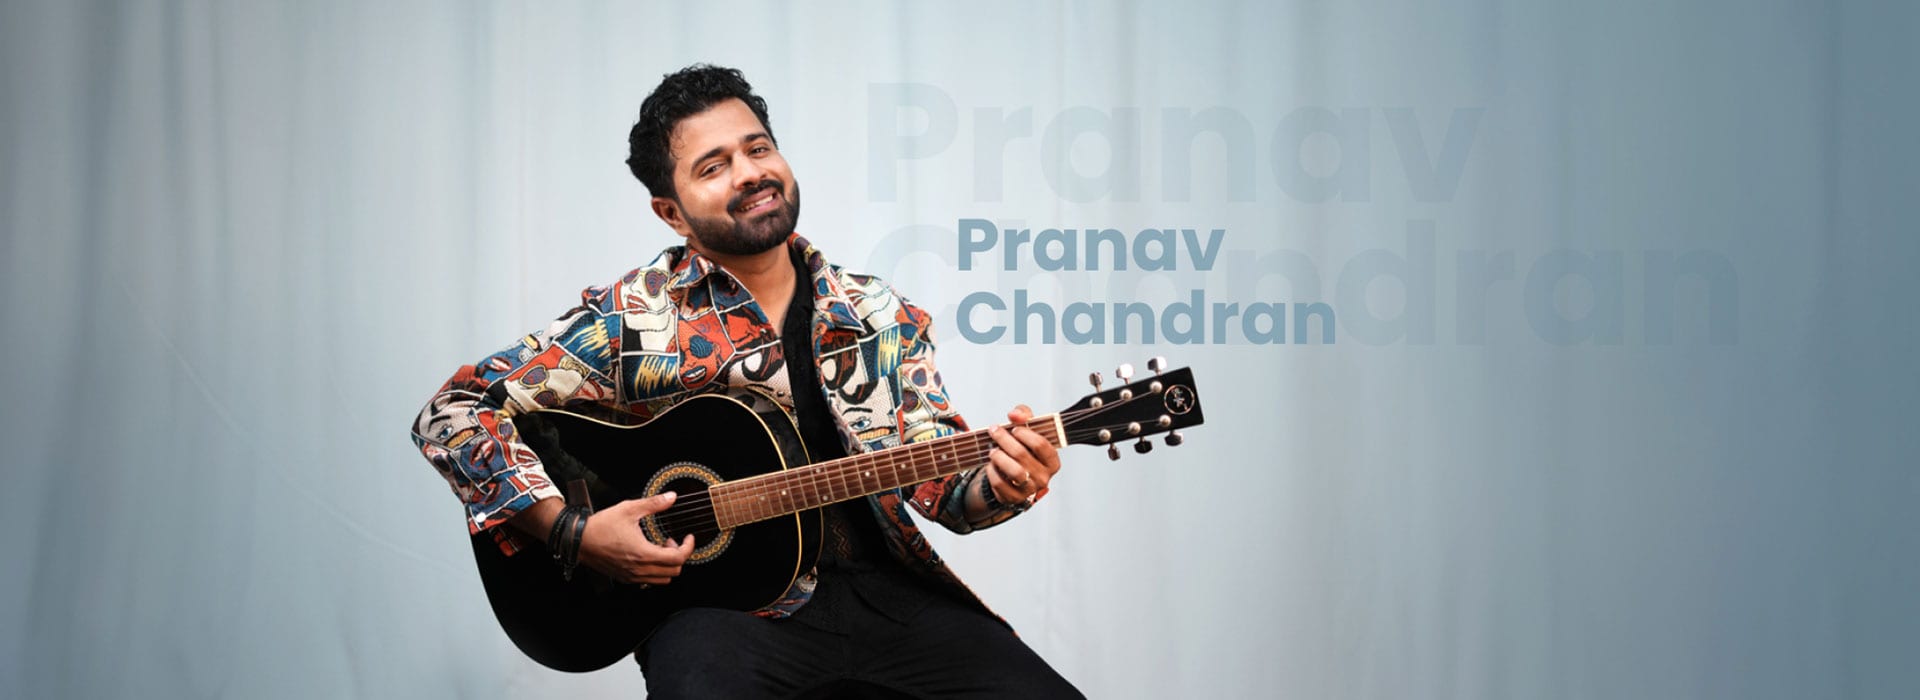 Pranav Chandran